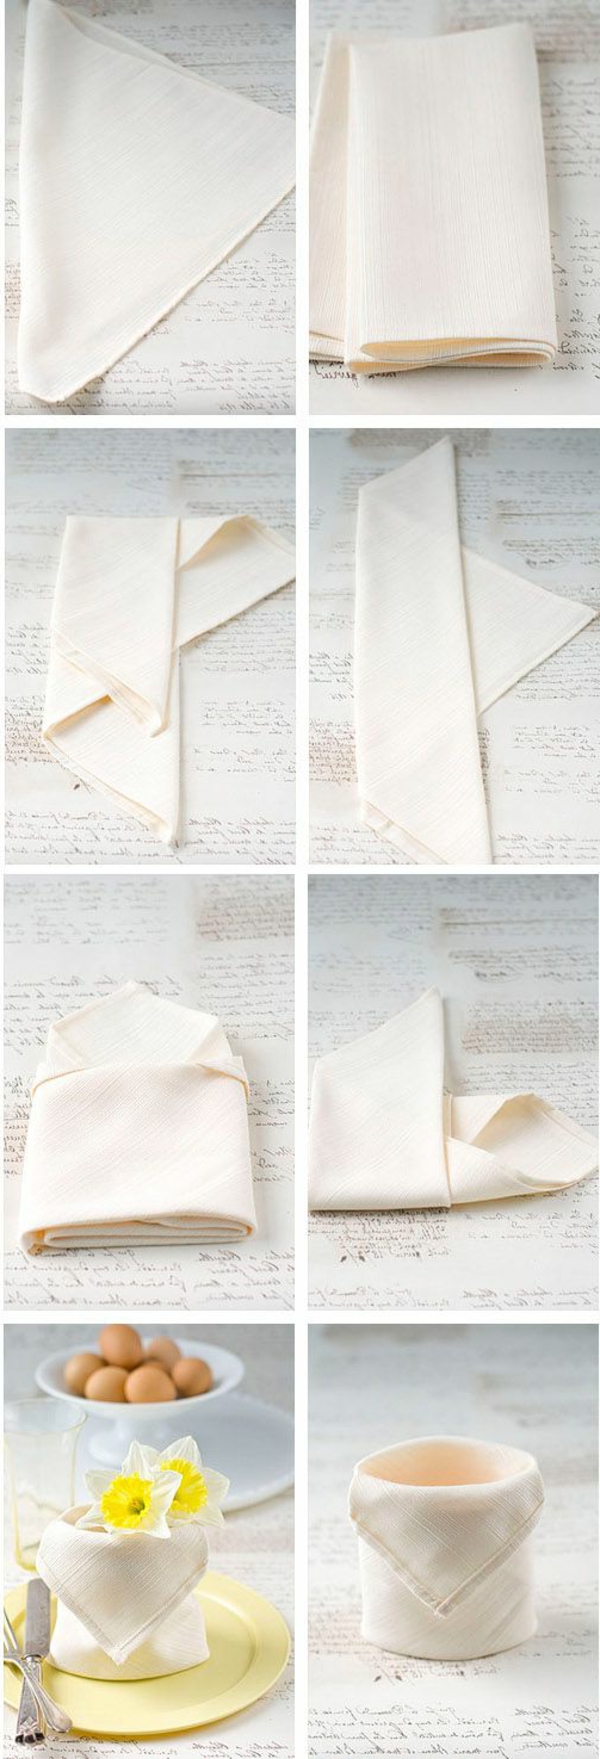 cool-idée-de-serviette-blanche-pliage